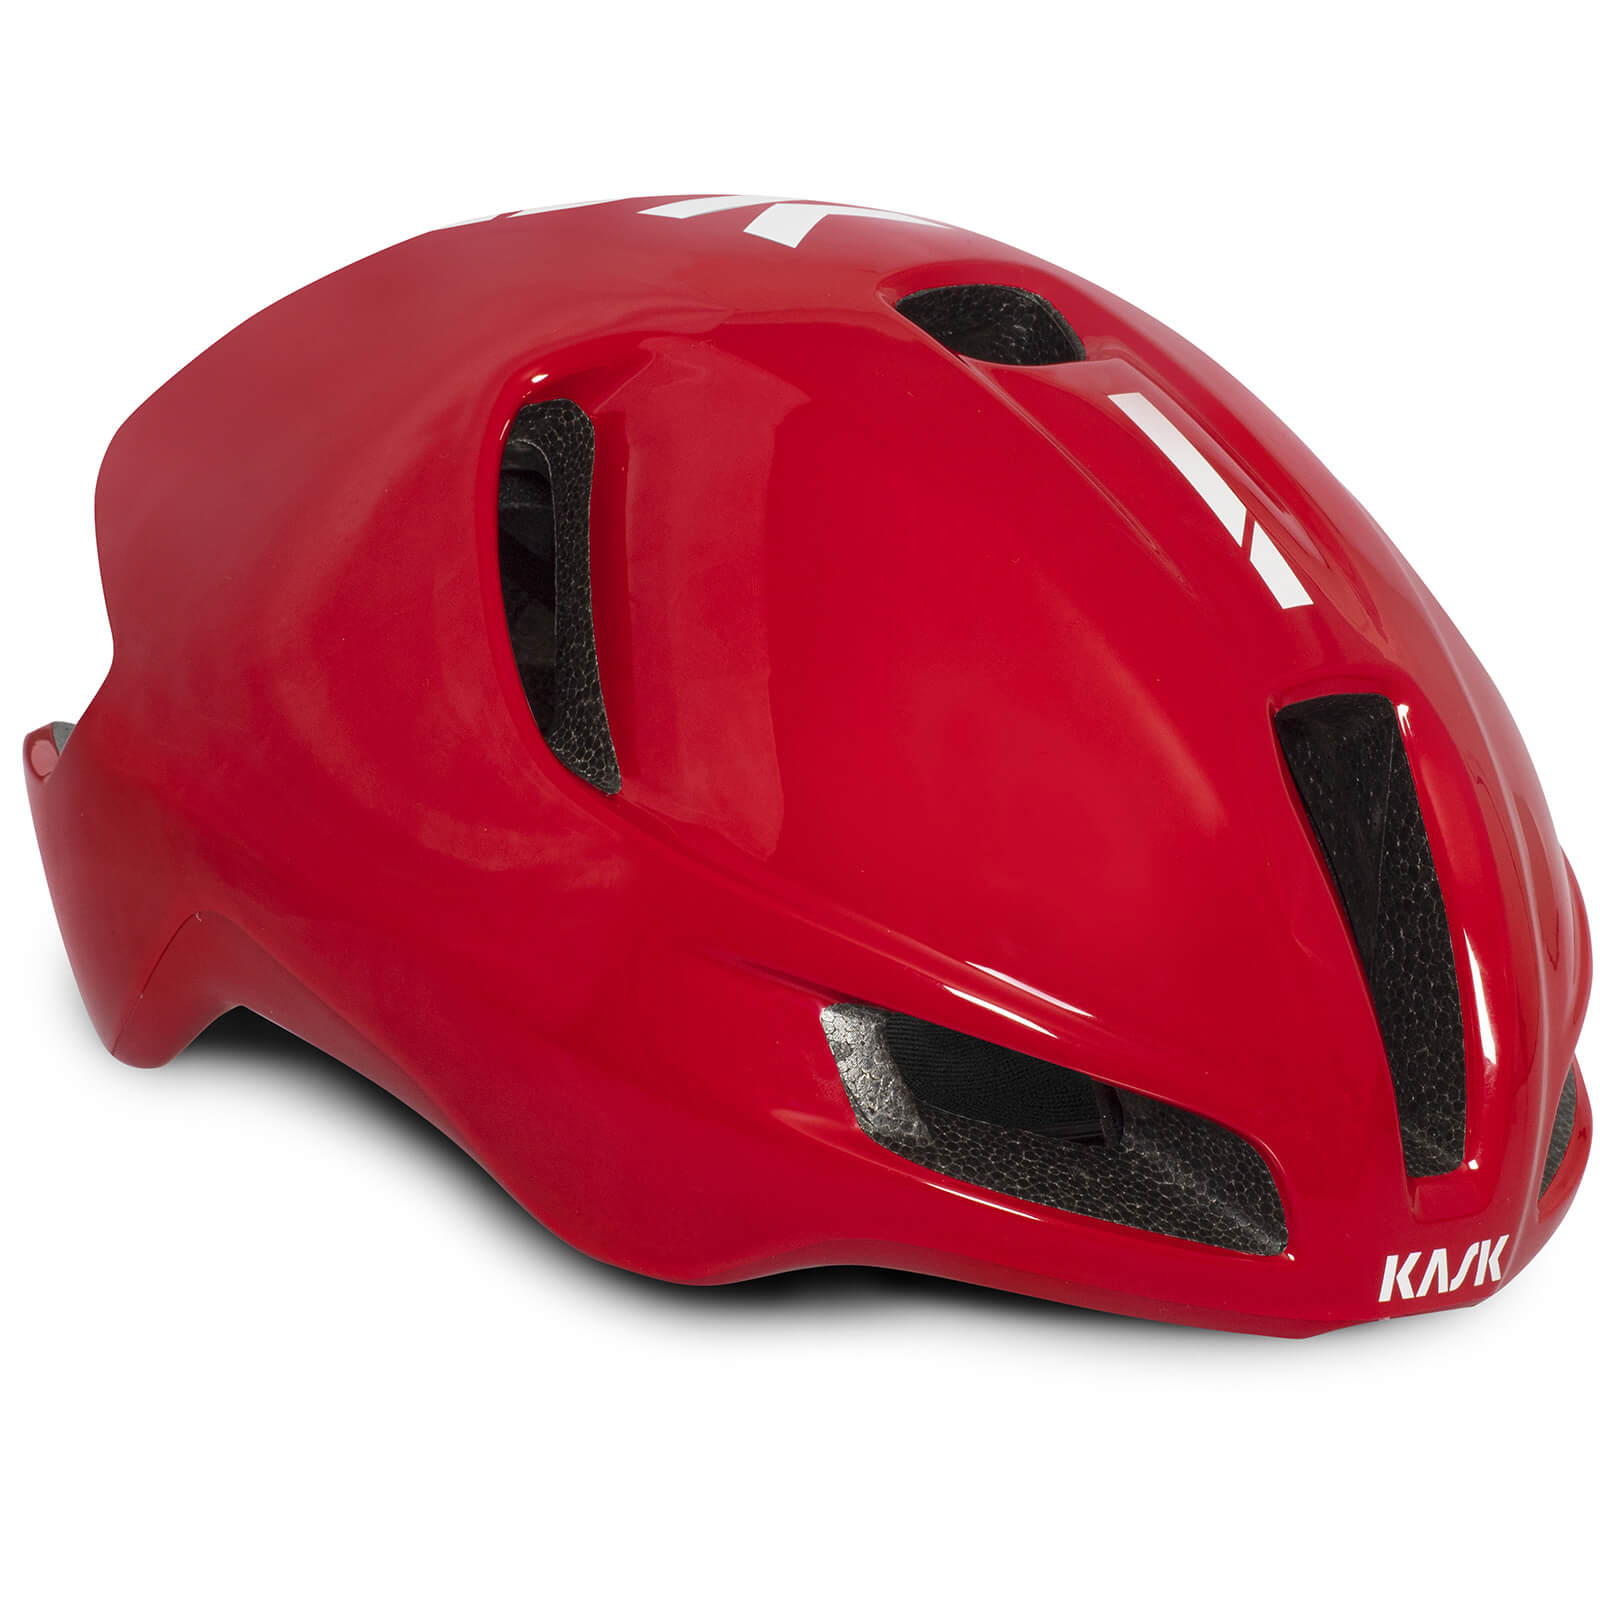 Kask Utopia Road Helmet - M - Red